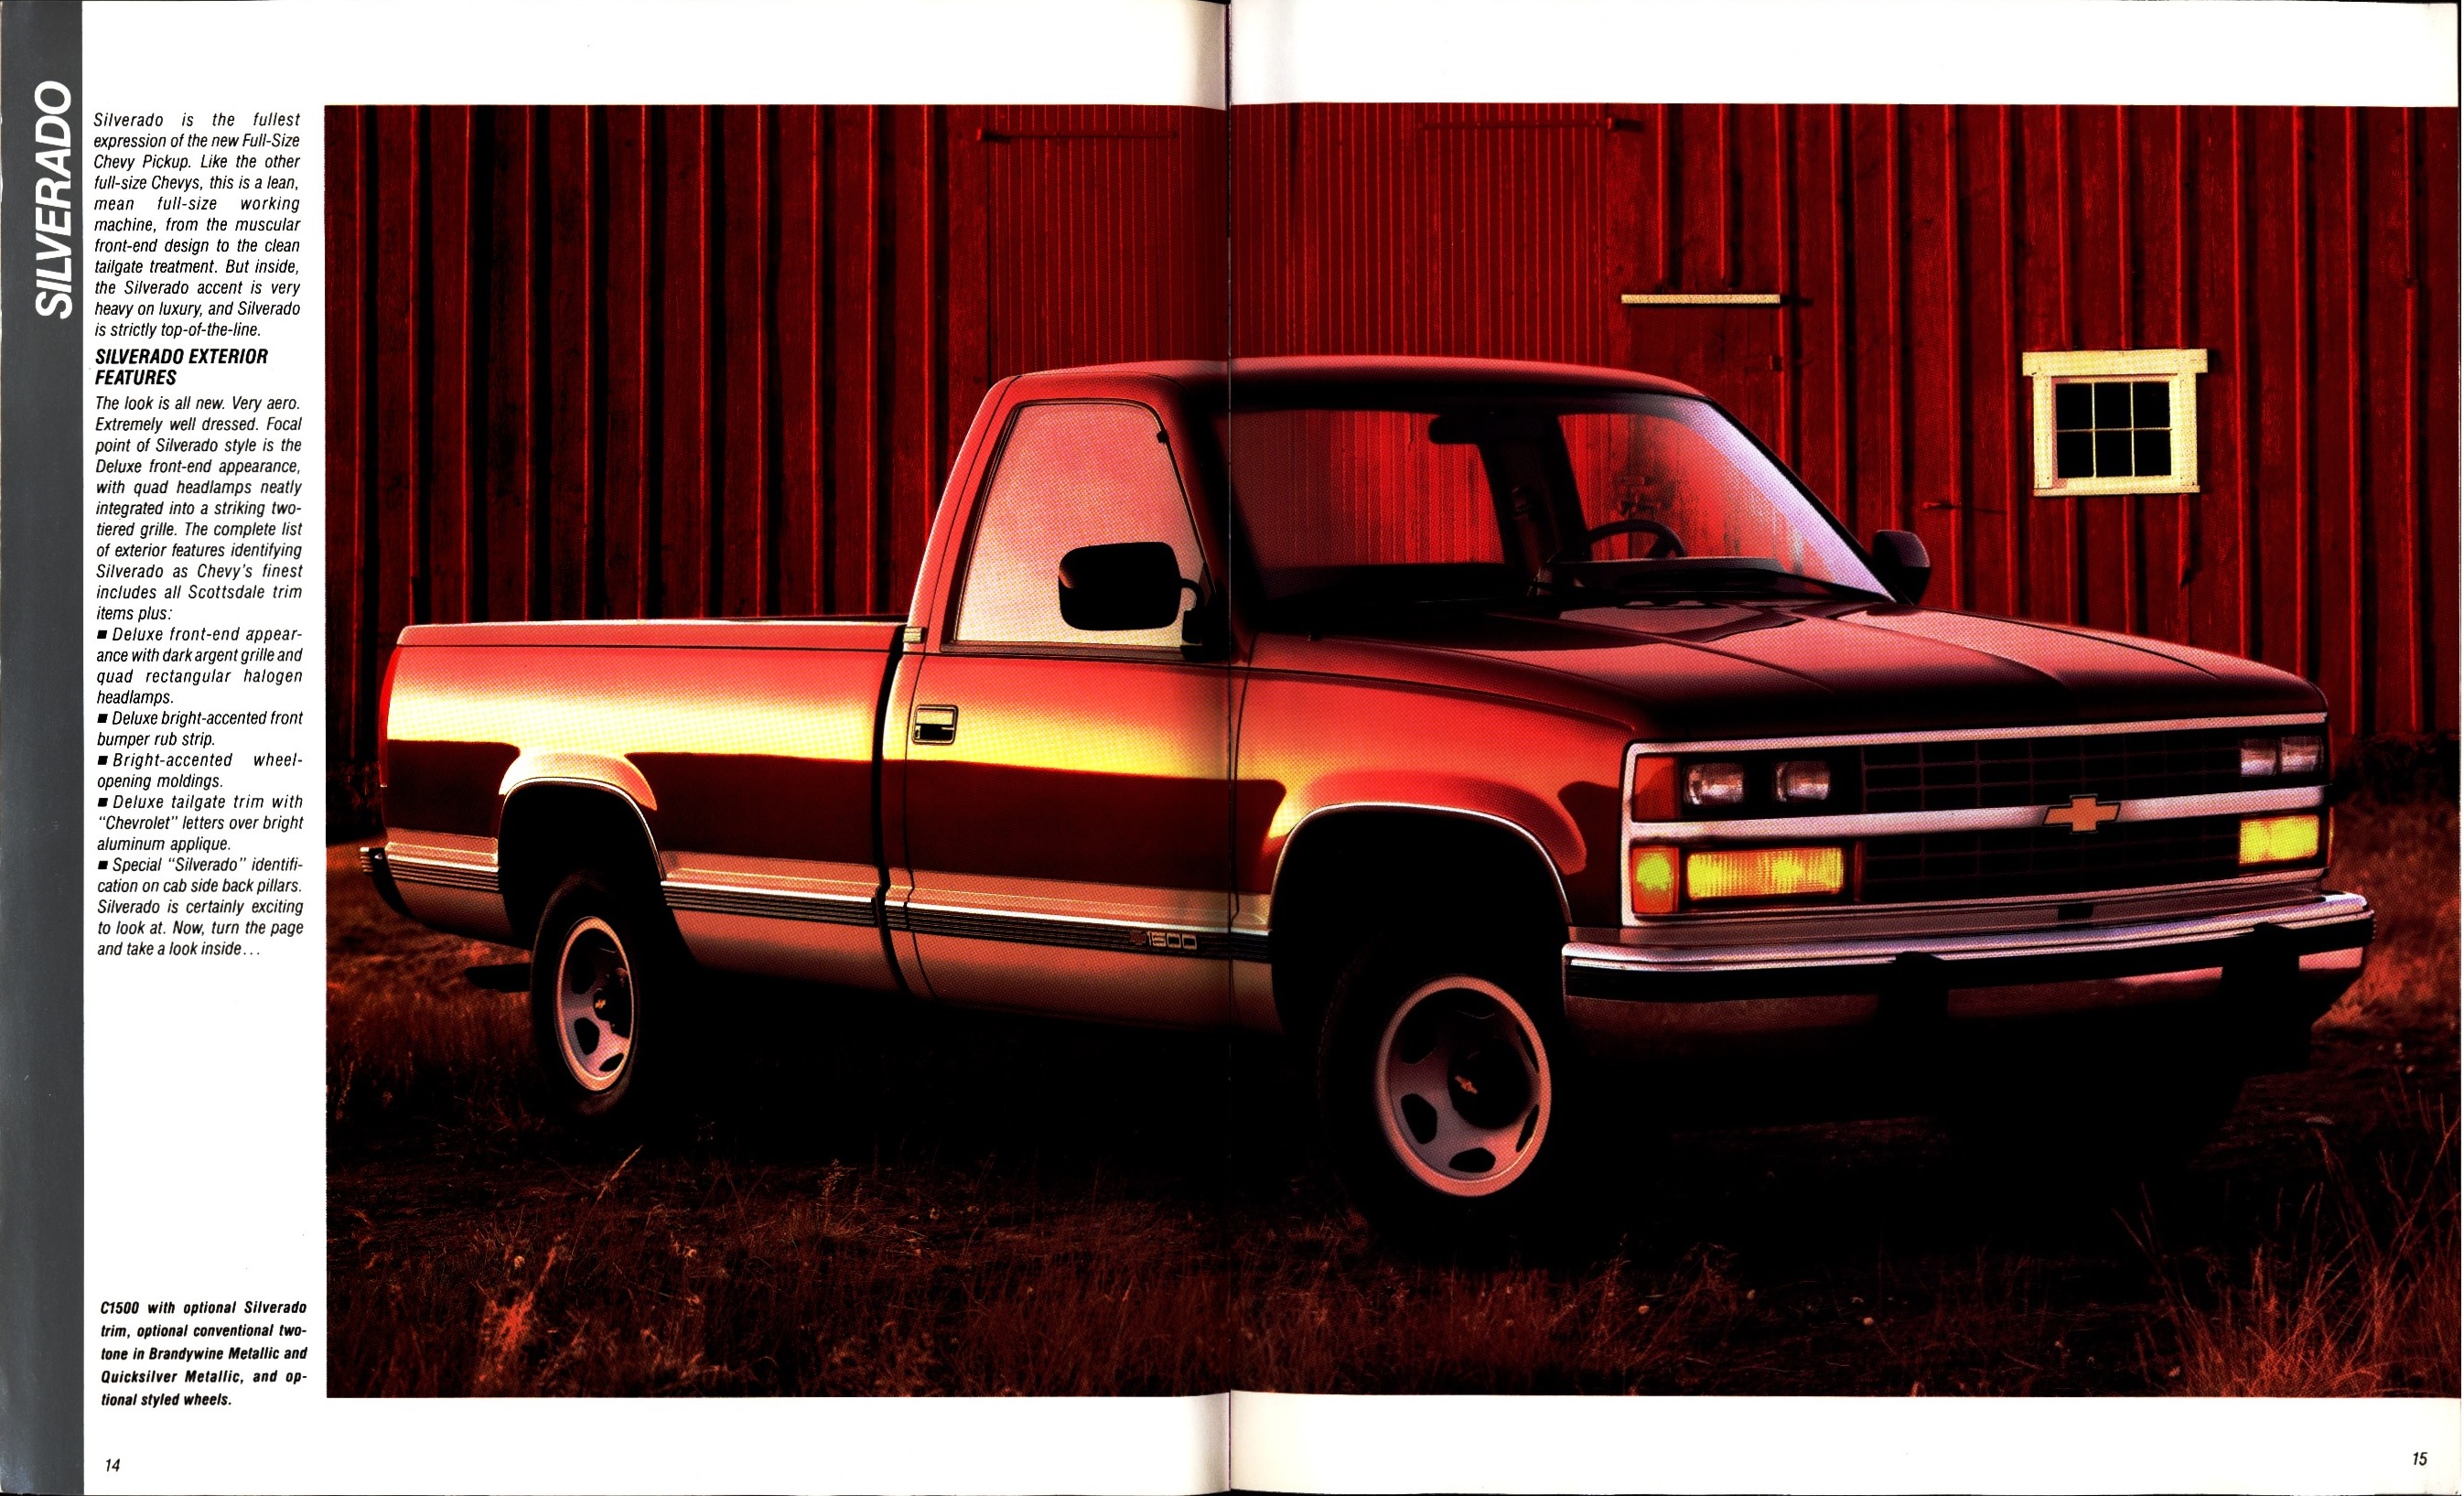 1988 Chevrolet Full Size Pickup Brochure (Rev) 14-15